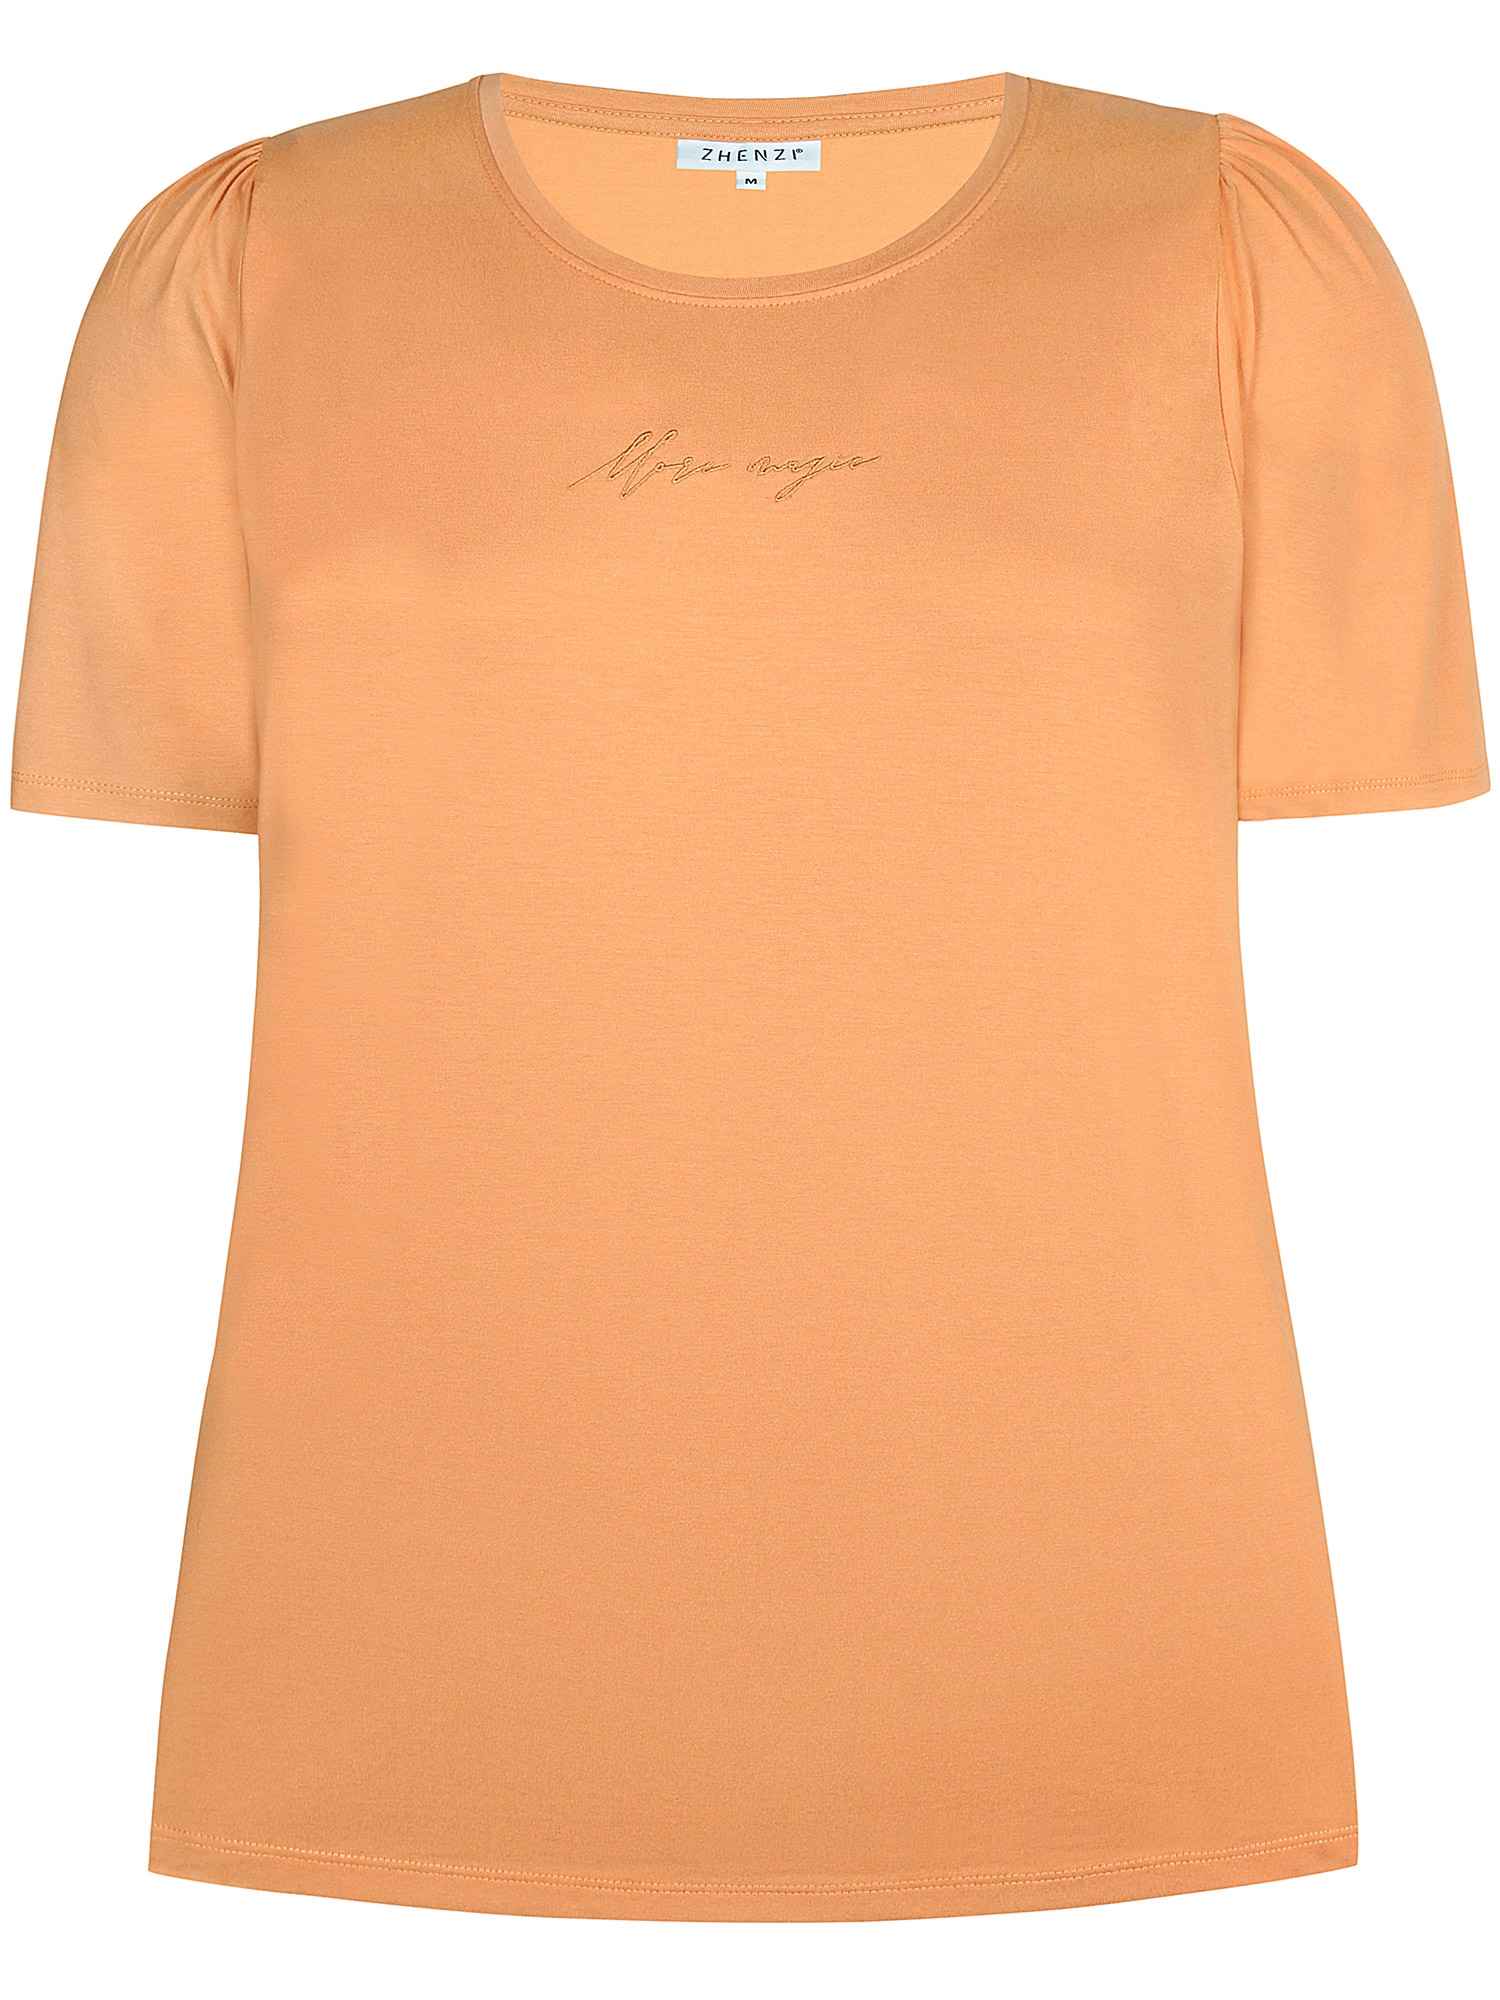 CARLEE - Oransje t-skjorte med broderi fra Zhenzi